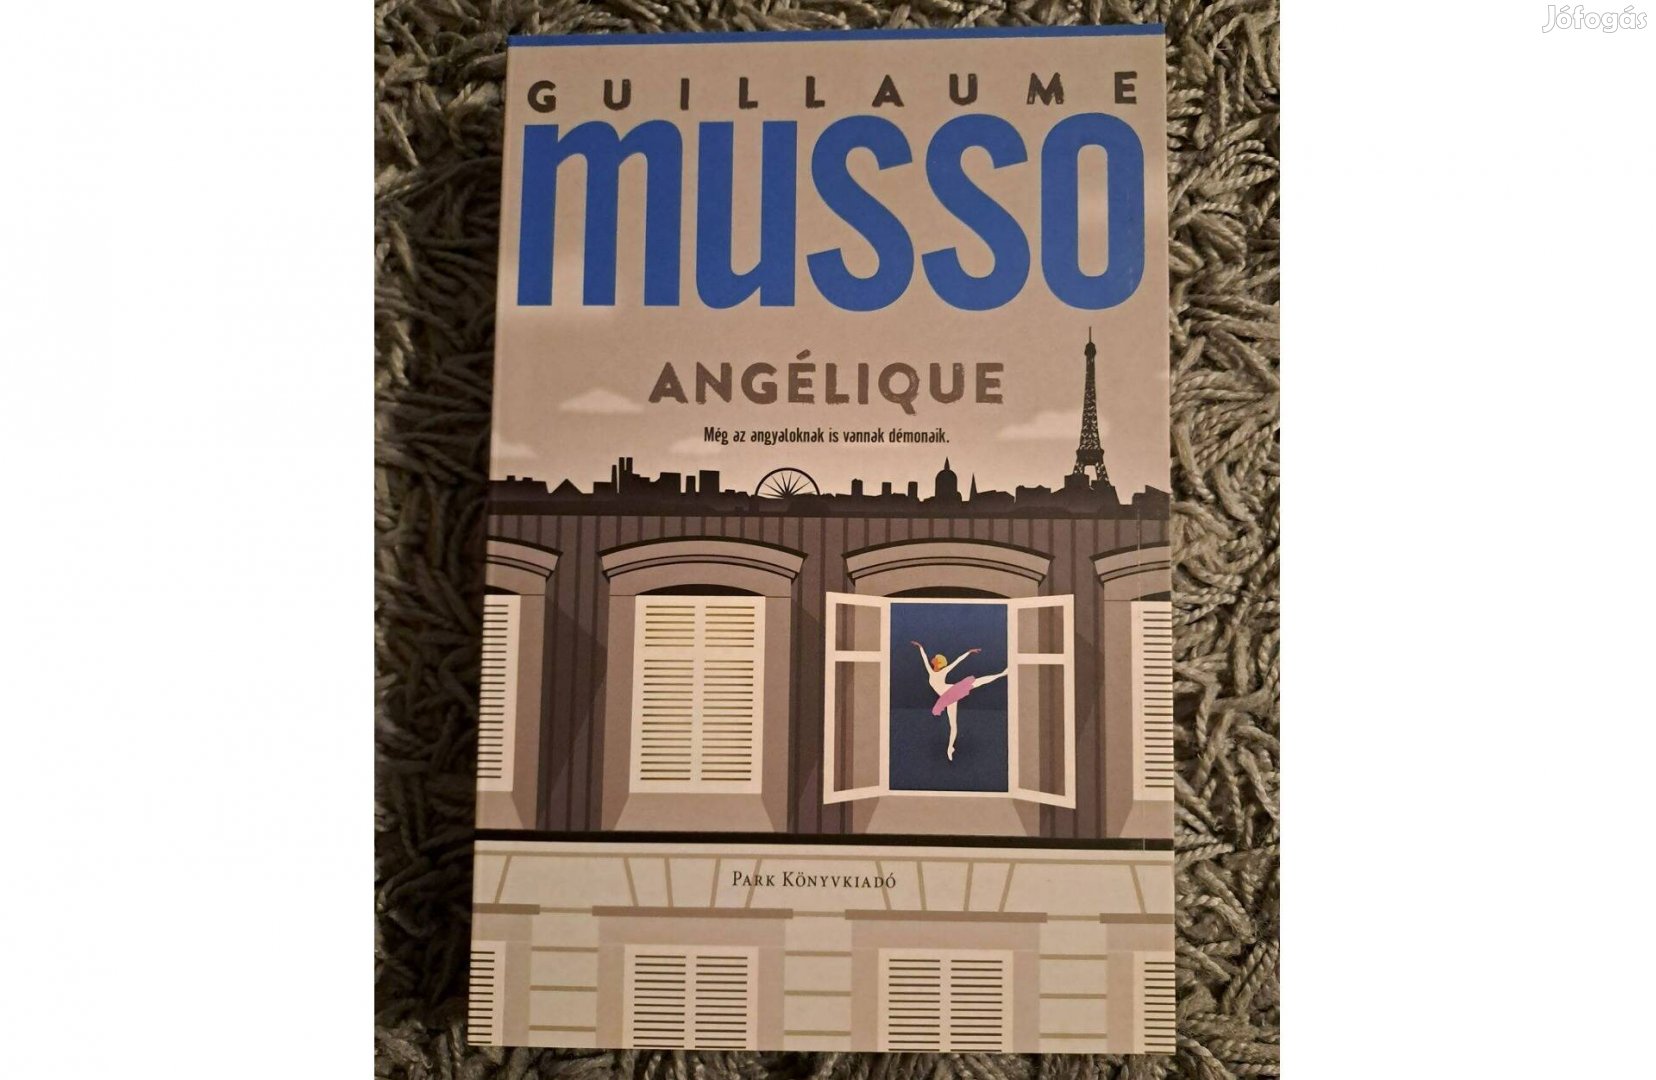 Guillaume Musso, Angélique